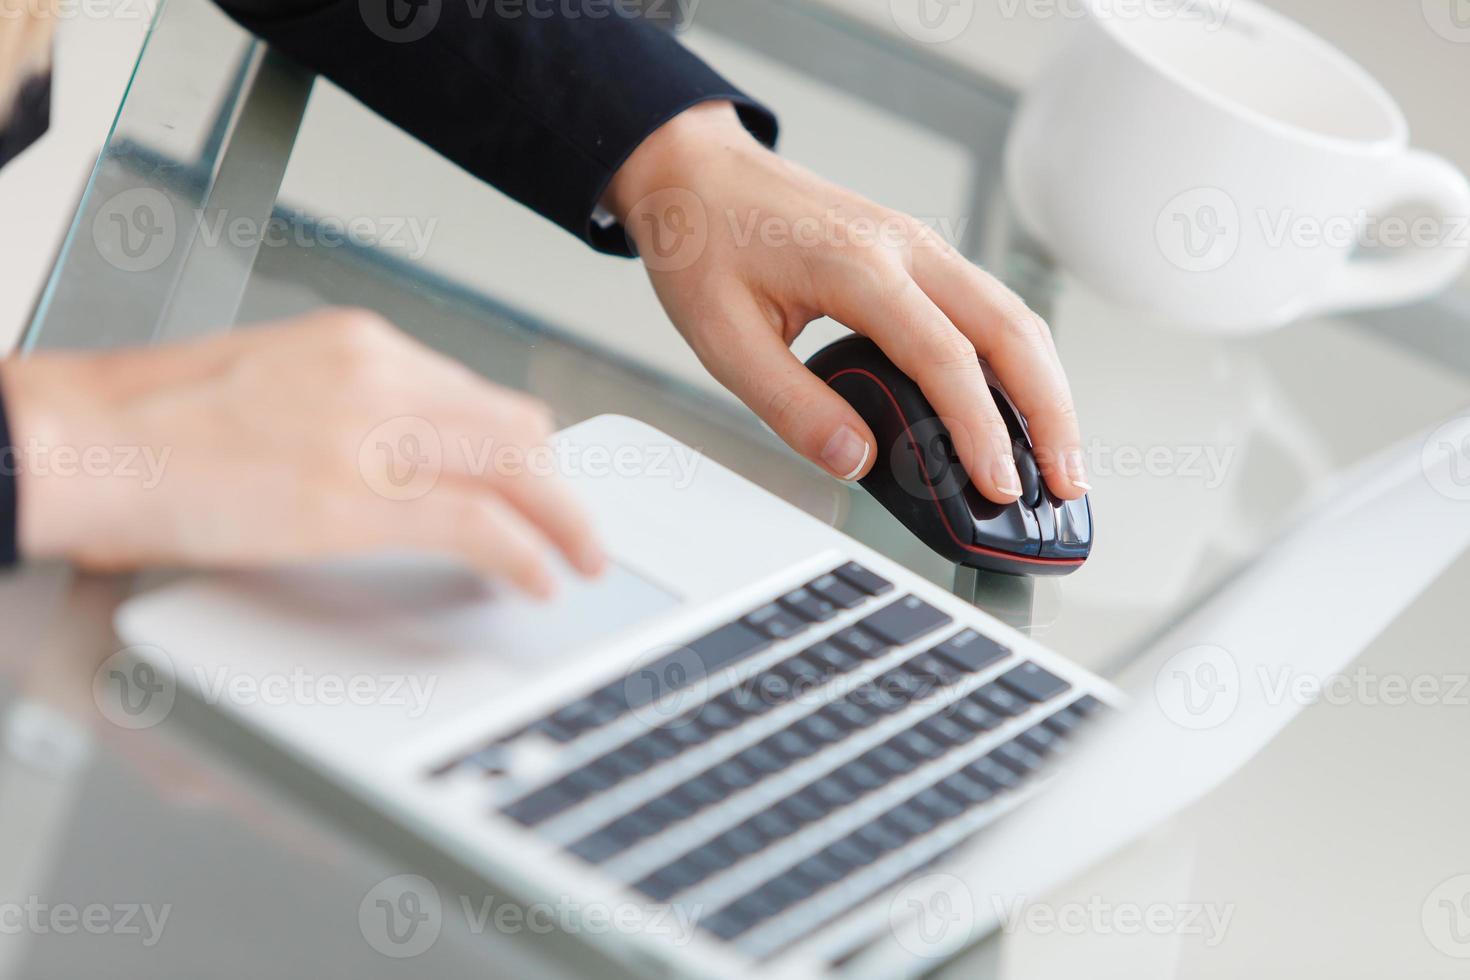 le mani della donna sulla tastiera del computer portatile foto